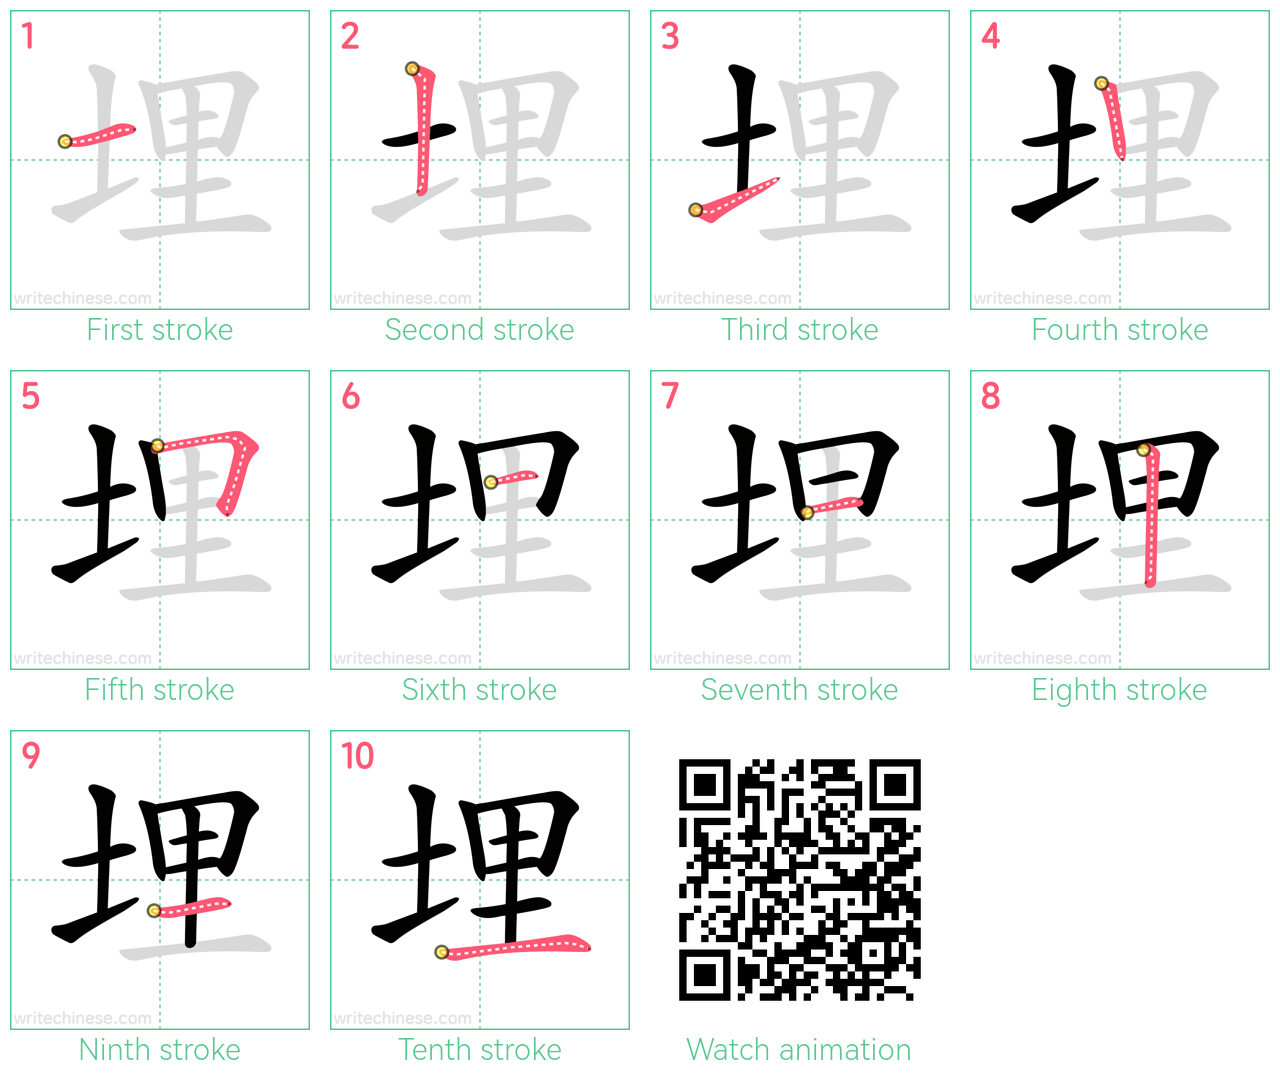 埋 step-by-step stroke order diagrams